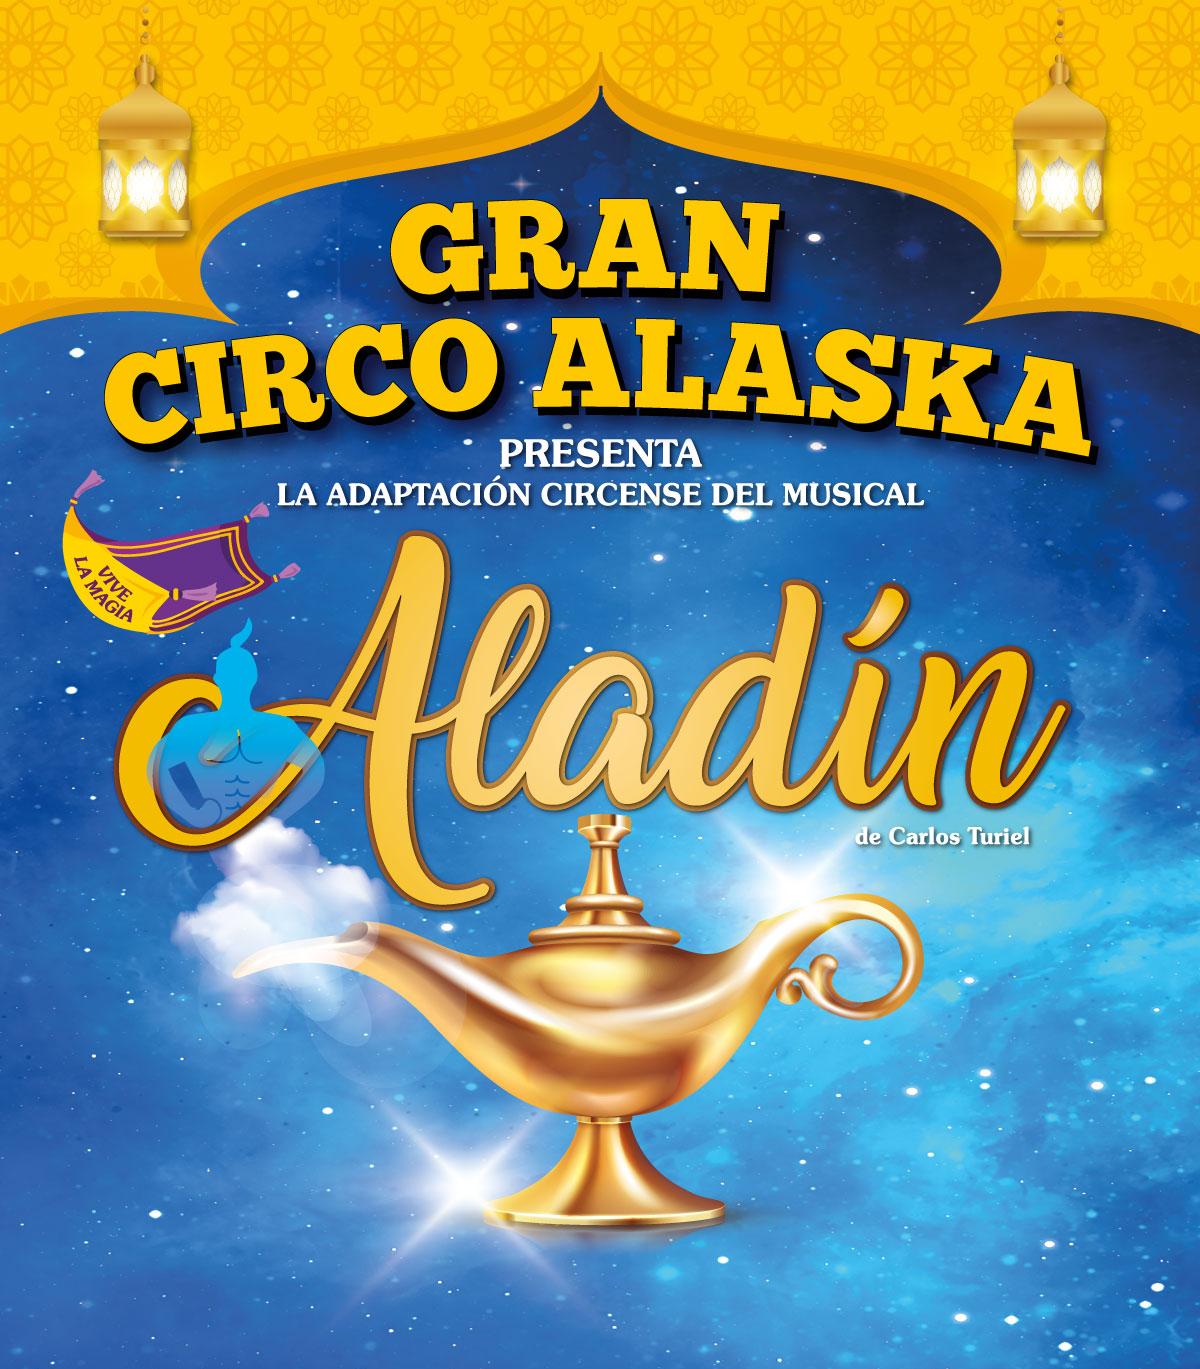 Gran Circo Alaska llega a Badajoz con su magia